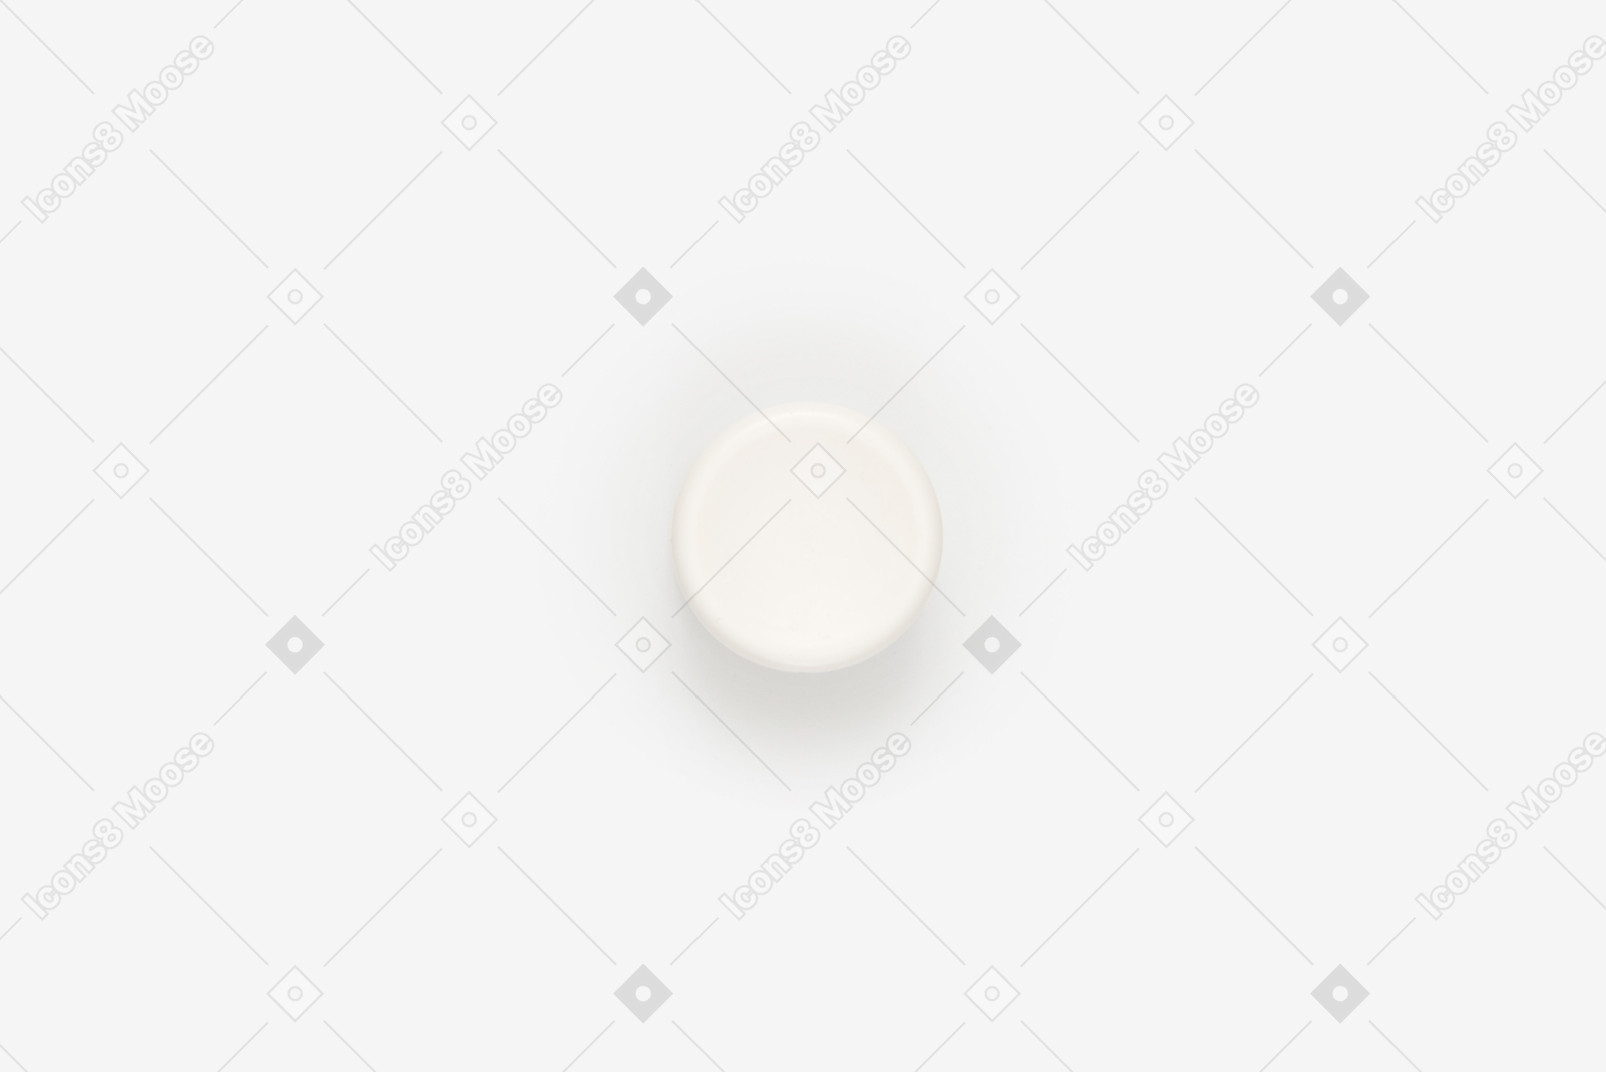 Bottom of white plastic pill bottle